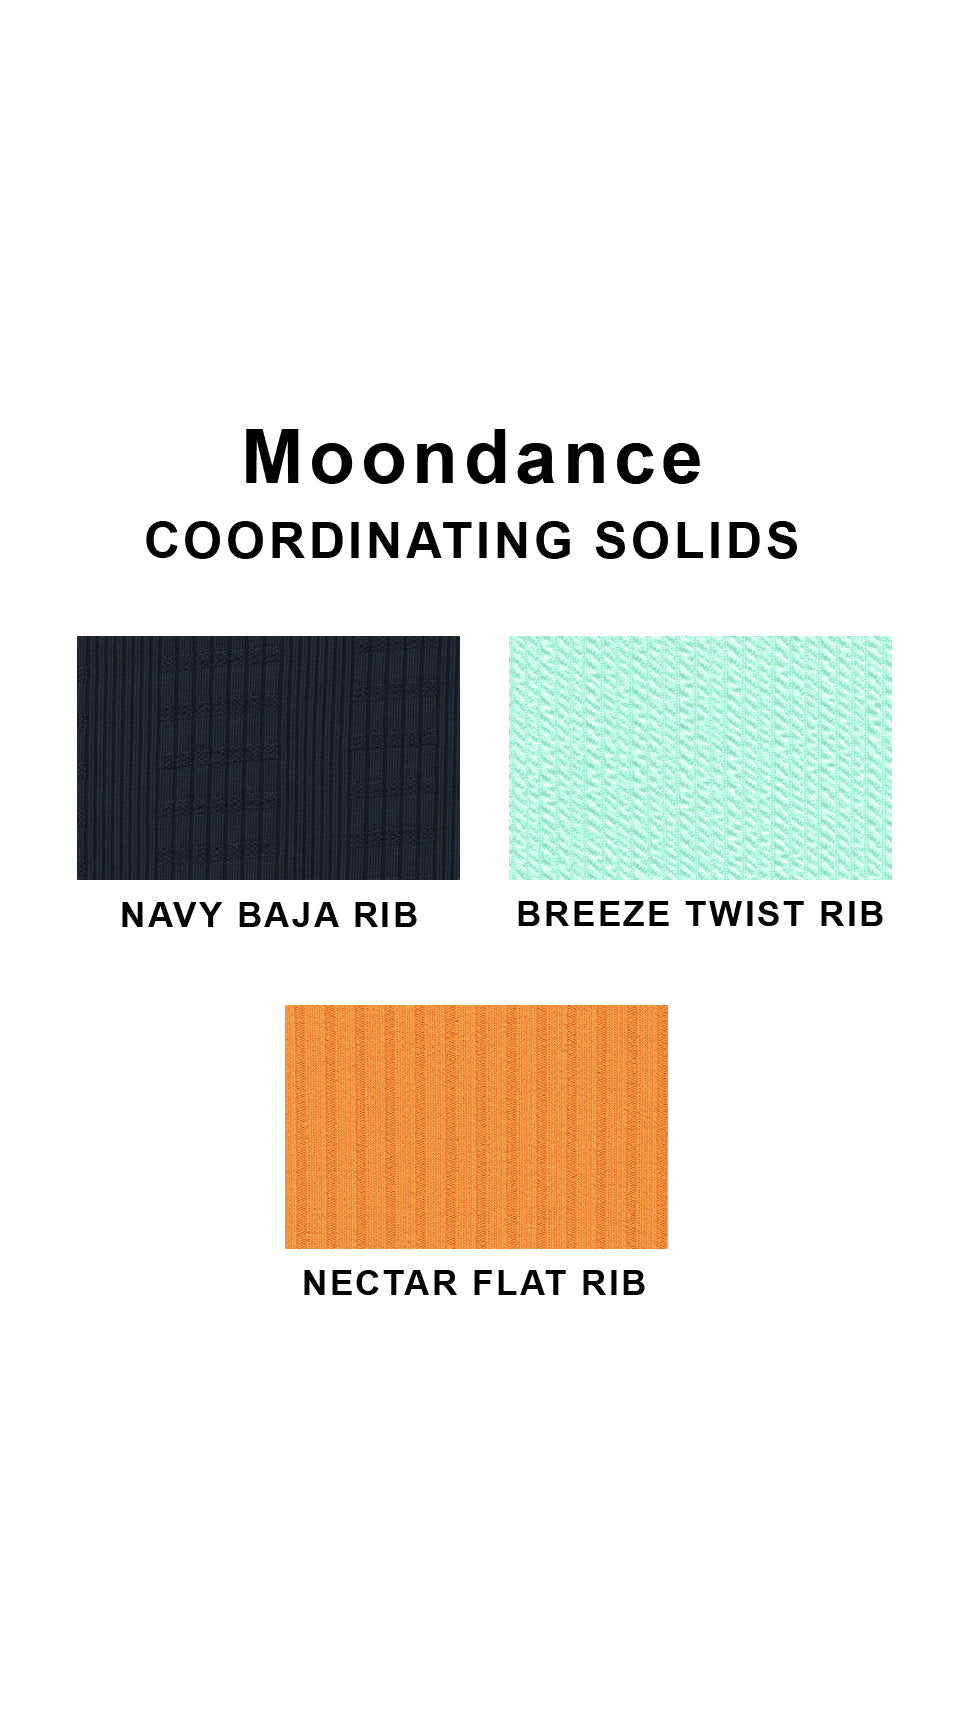 Coordinating solids chart for Moondance swimsuit print: Navy Baja Rib, Breeze Twist Rib and Nectar Flat Rib